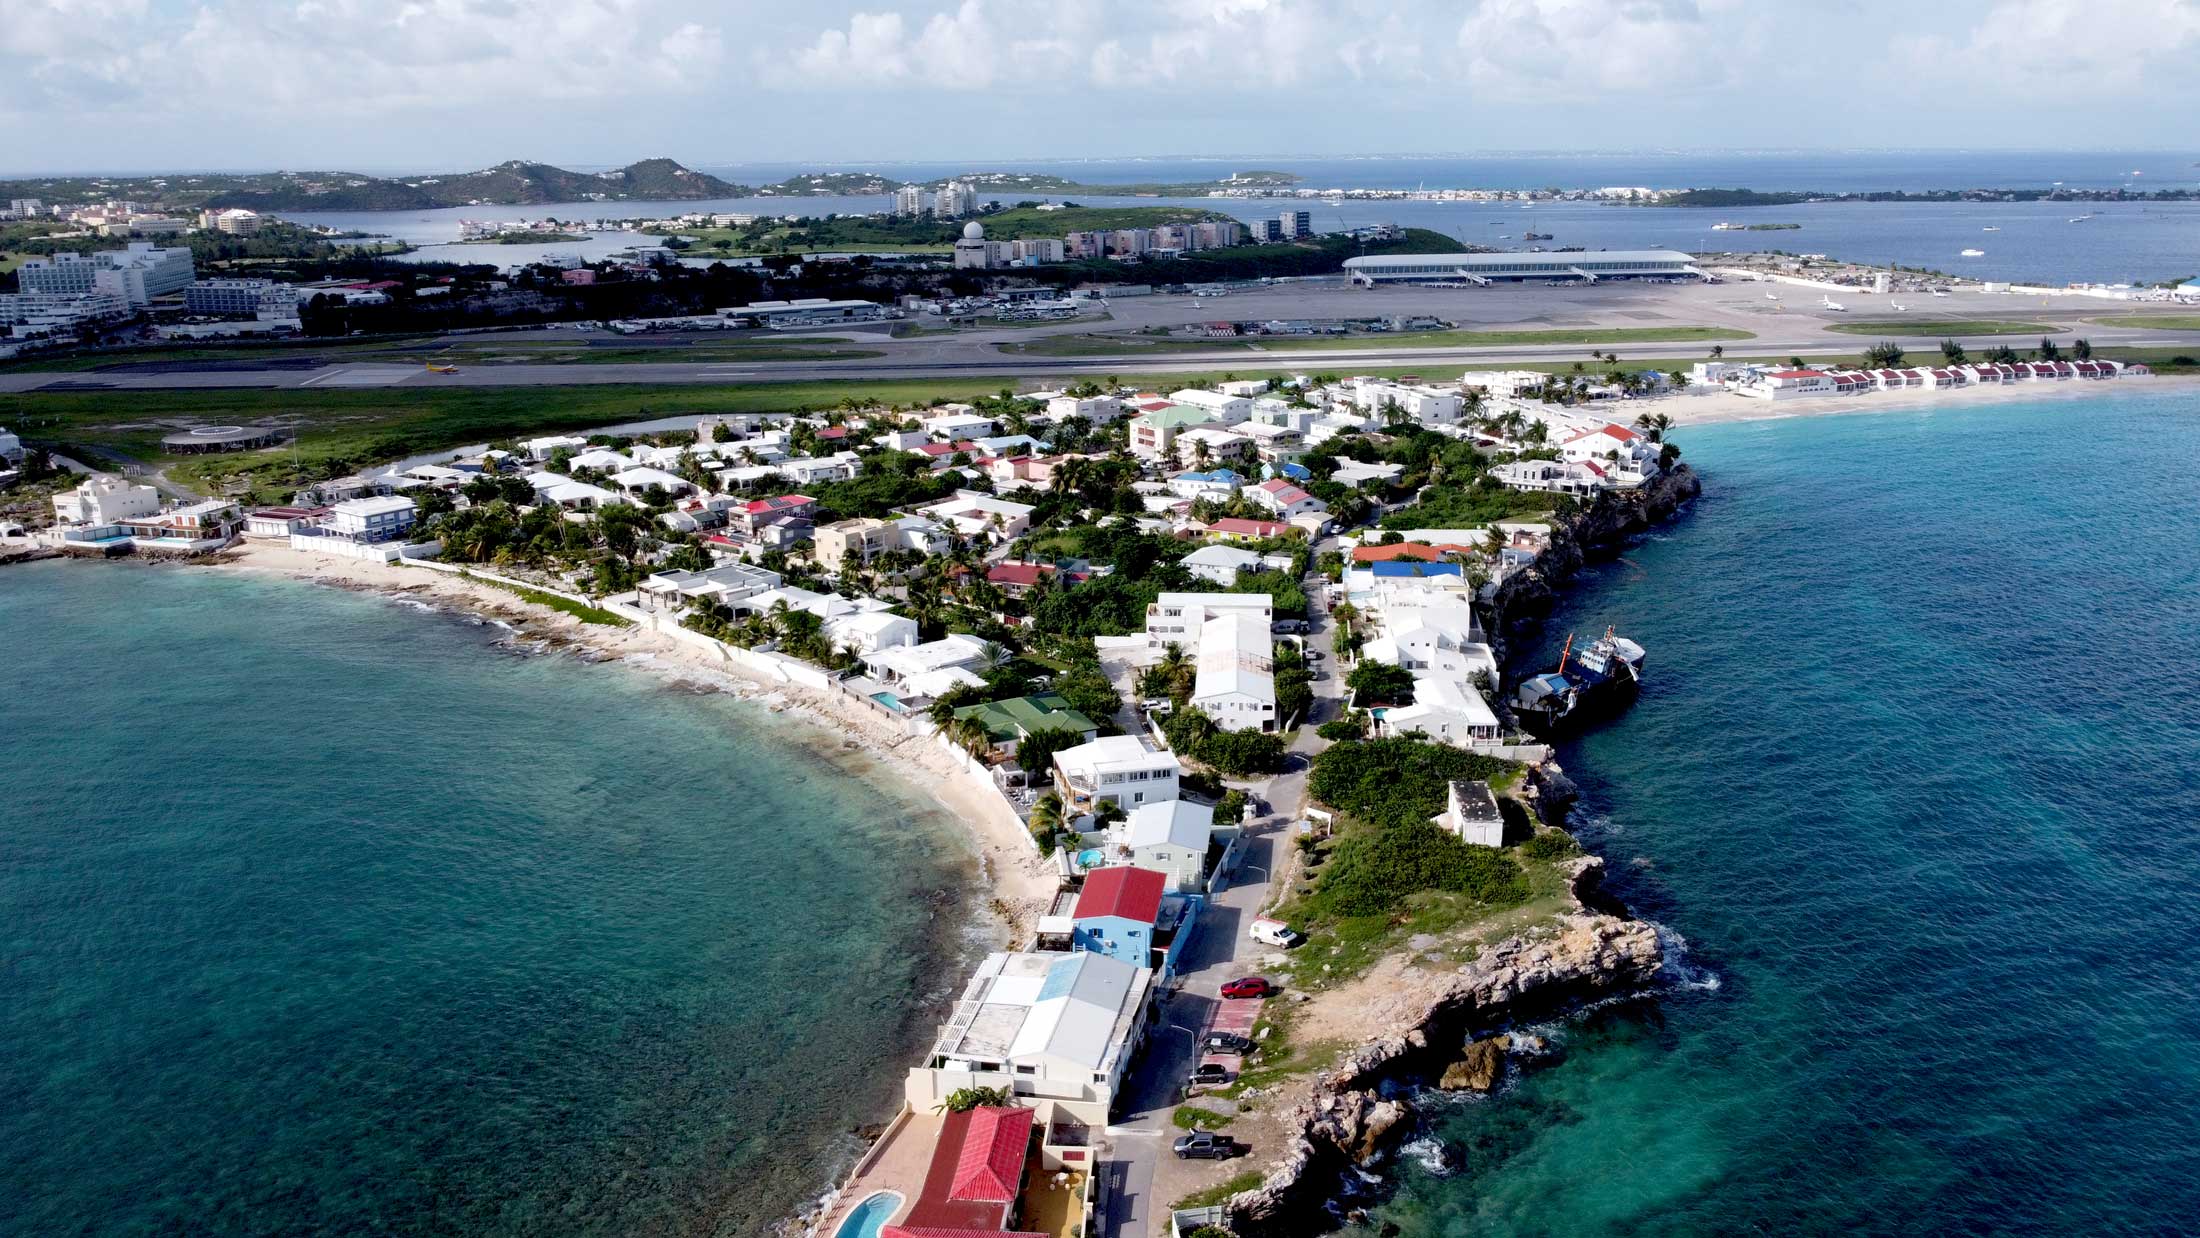 St Maarten Beach Villa For Sale